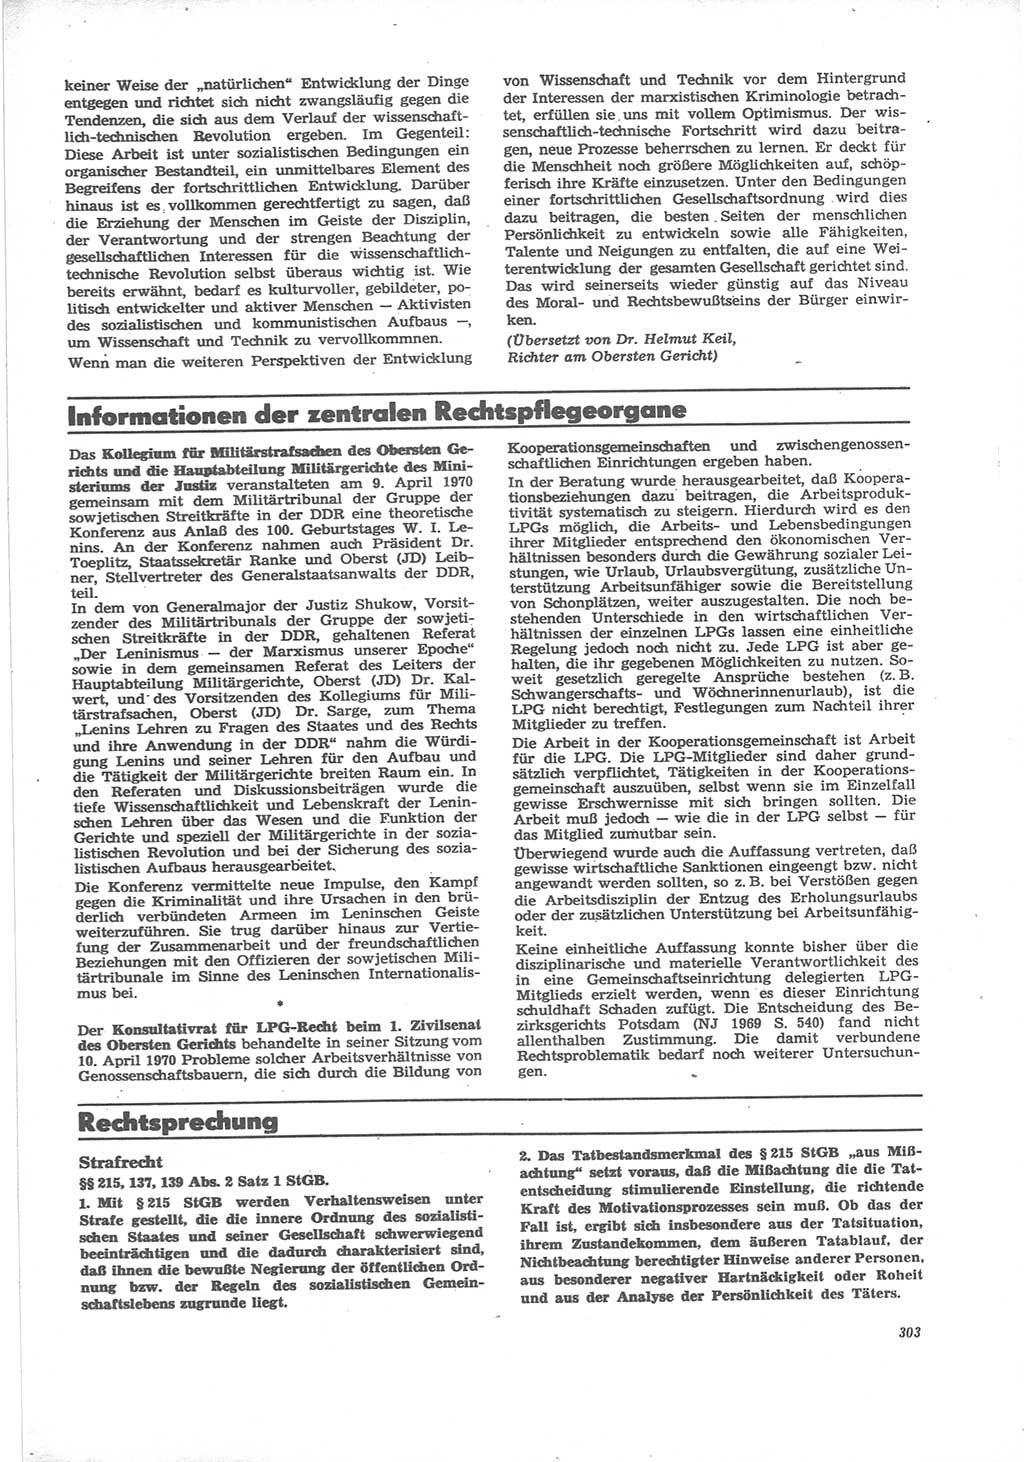 Neue Justiz (NJ), Zeitschrift für Recht und Rechtswissenschaft [Deutsche Demokratische Republik (DDR)], 24. Jahrgang 1970, Seite 303 (NJ DDR 1970, S. 303)